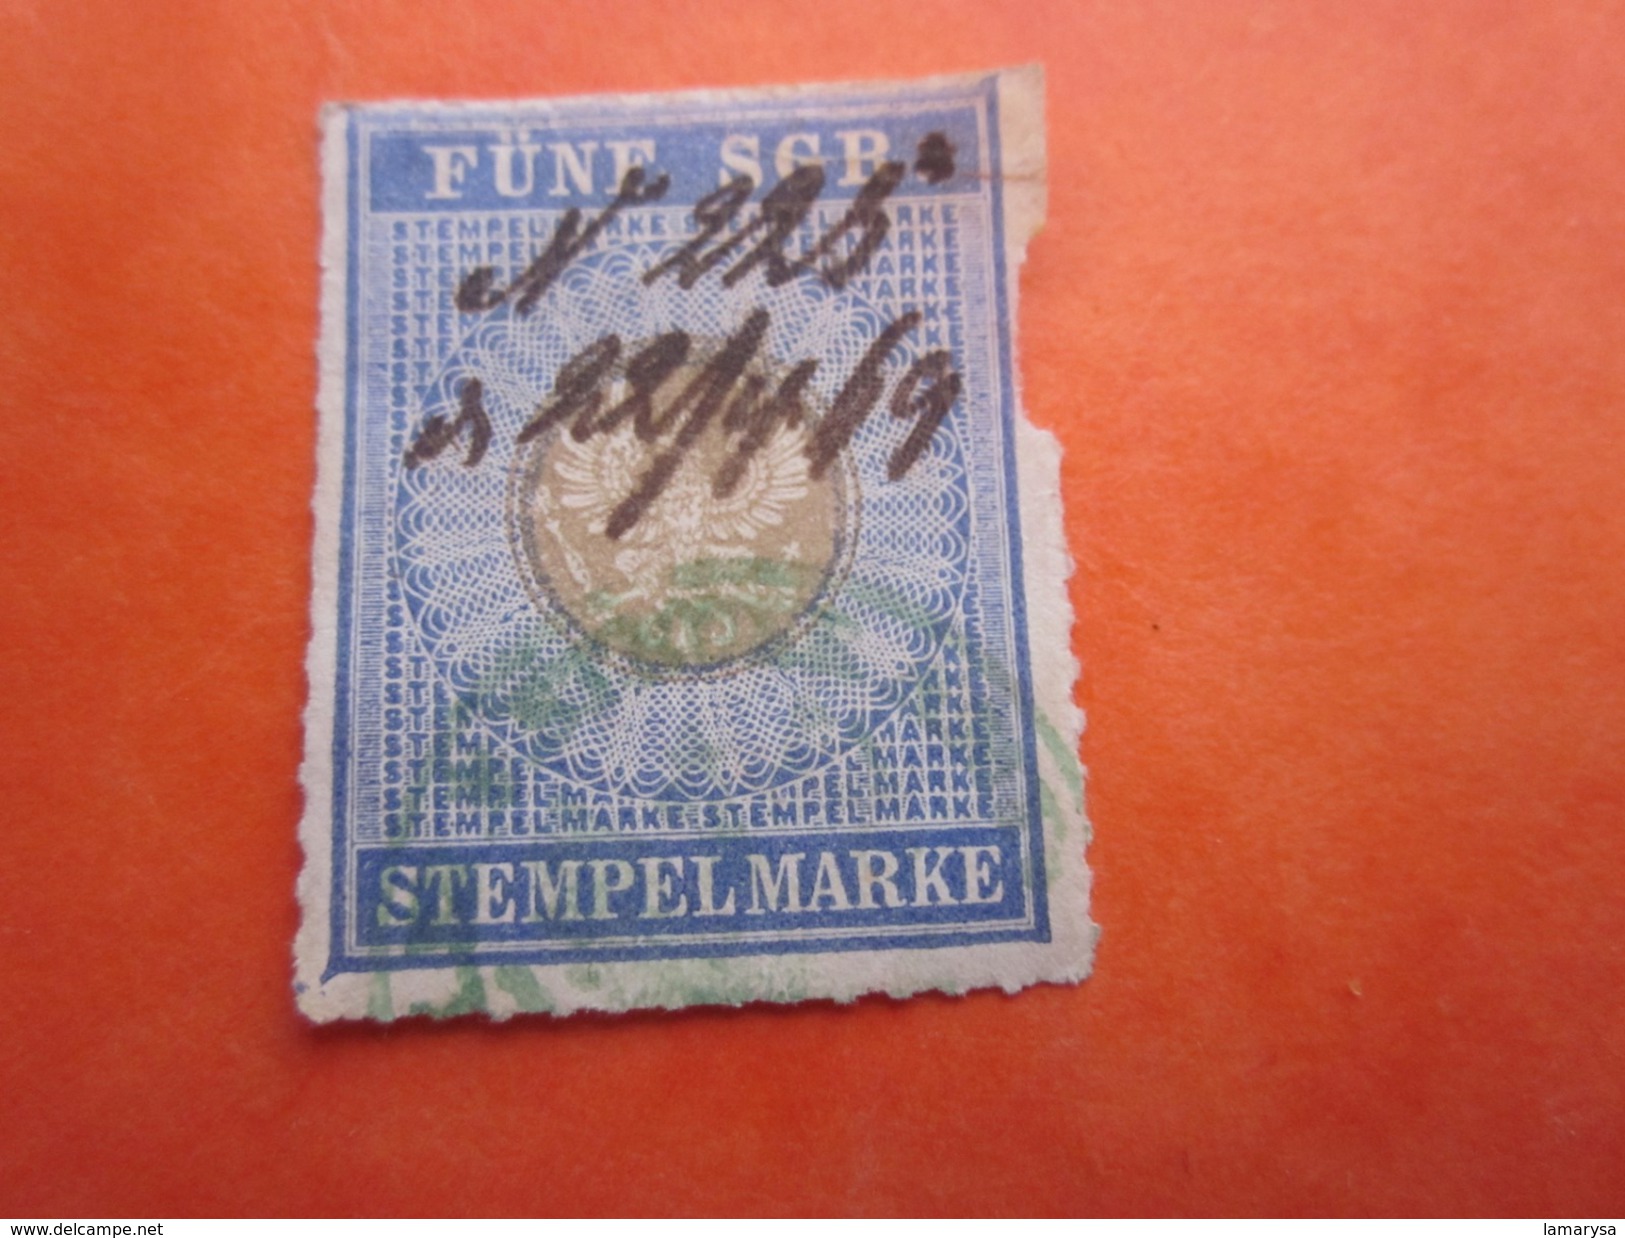 22-4-1869 Österreichische Stempelmarke FUNE SGP STEMPEL MARKE   STAMP BRIEF TIMBRE - ...-1850 Voorfilatelie